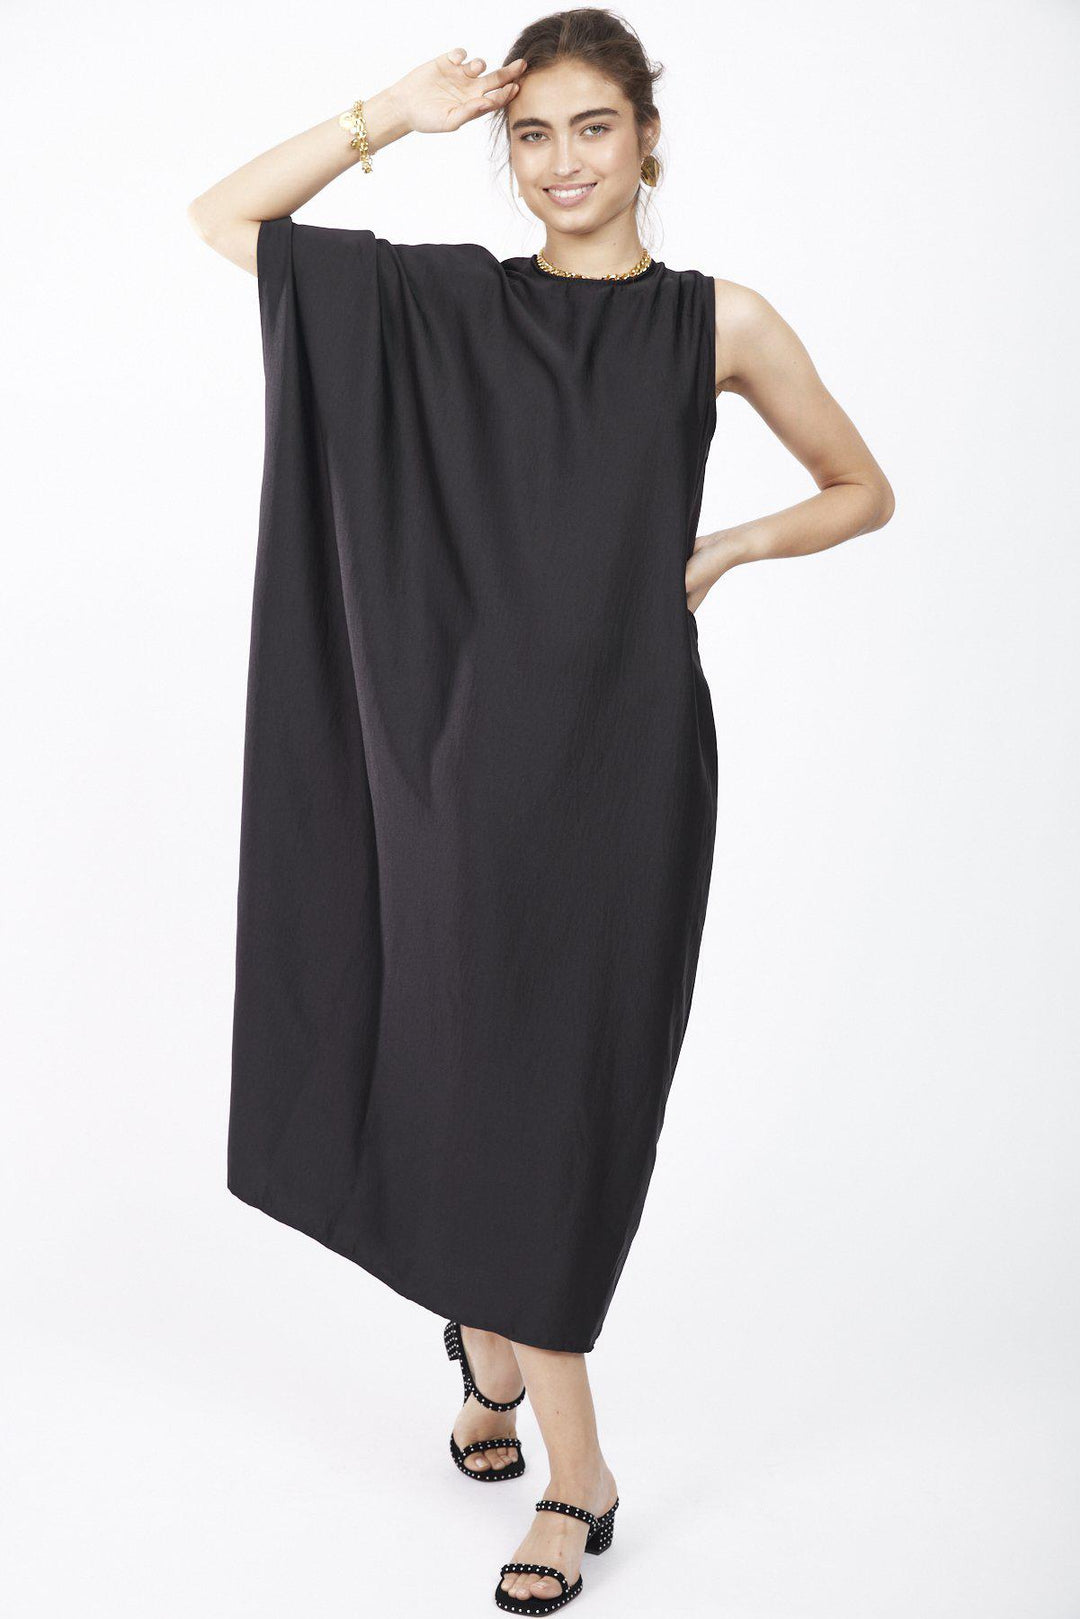 שמלת כרמן בצבע שחור - Dana Sidi